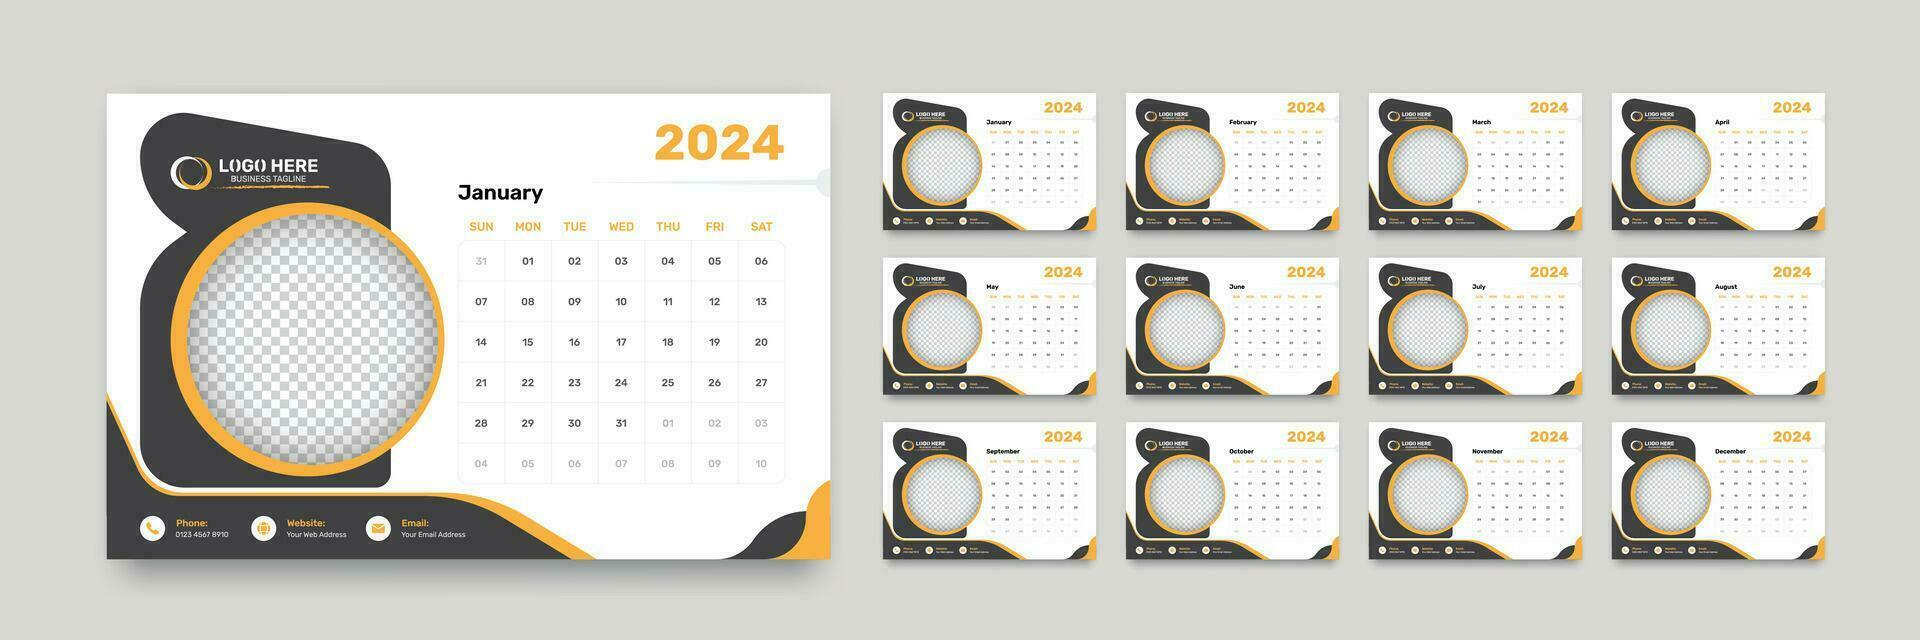 enkel företag skrivbord kalender med 12 månader exakt datum formatera för de år 2024 vektor